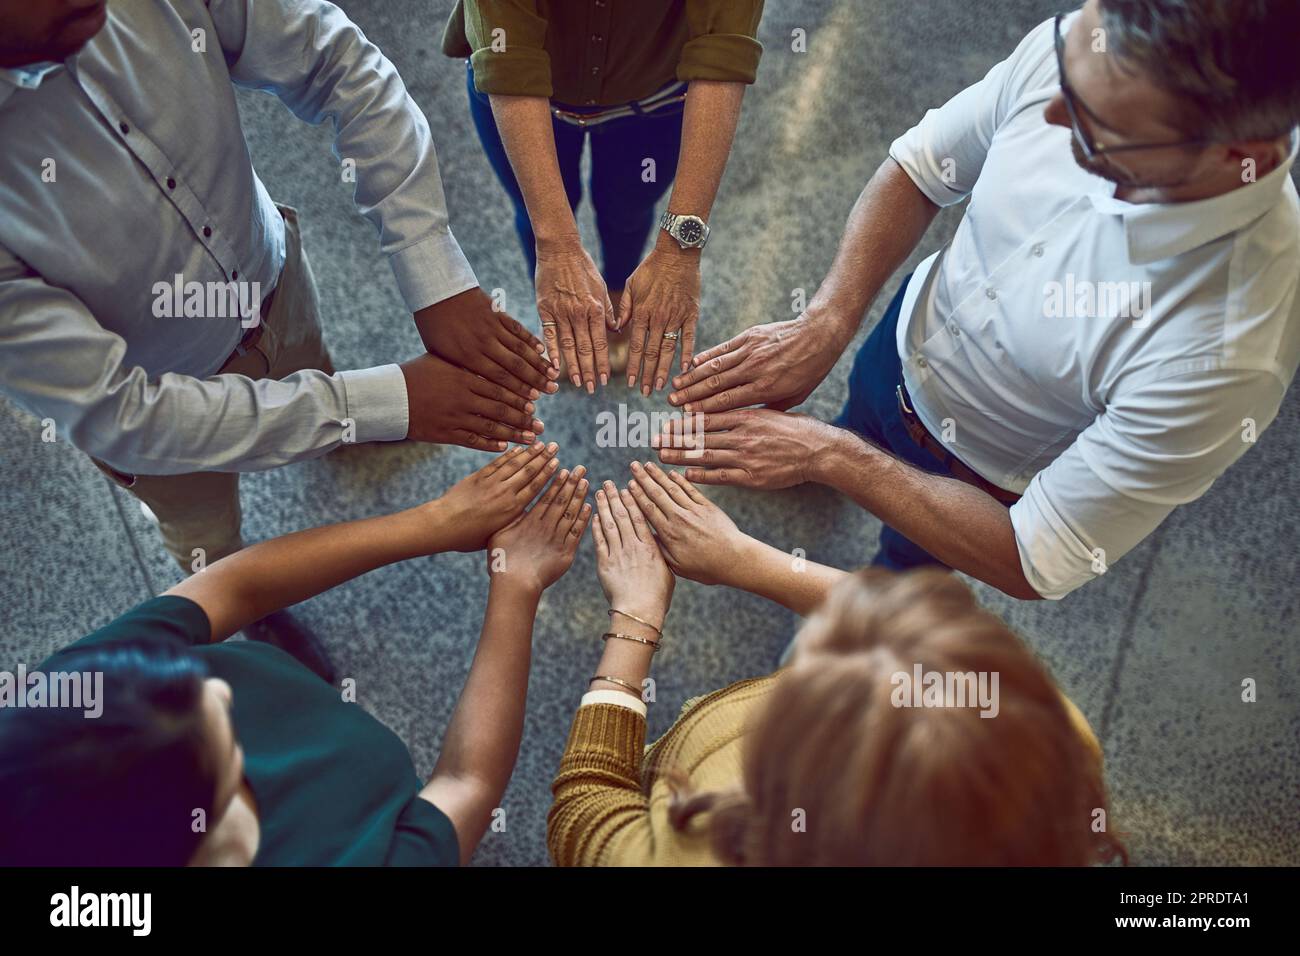 Geschäftsleute kreisen mit den Händen, bauen Teams auf und zeigen Unterstützung bei der Arbeit von oben. Kollegen, die sich mit den Fingern formieren und Einheit, Vertrauen und Gemeinschaft zum Ausdruck bringen Stockfoto